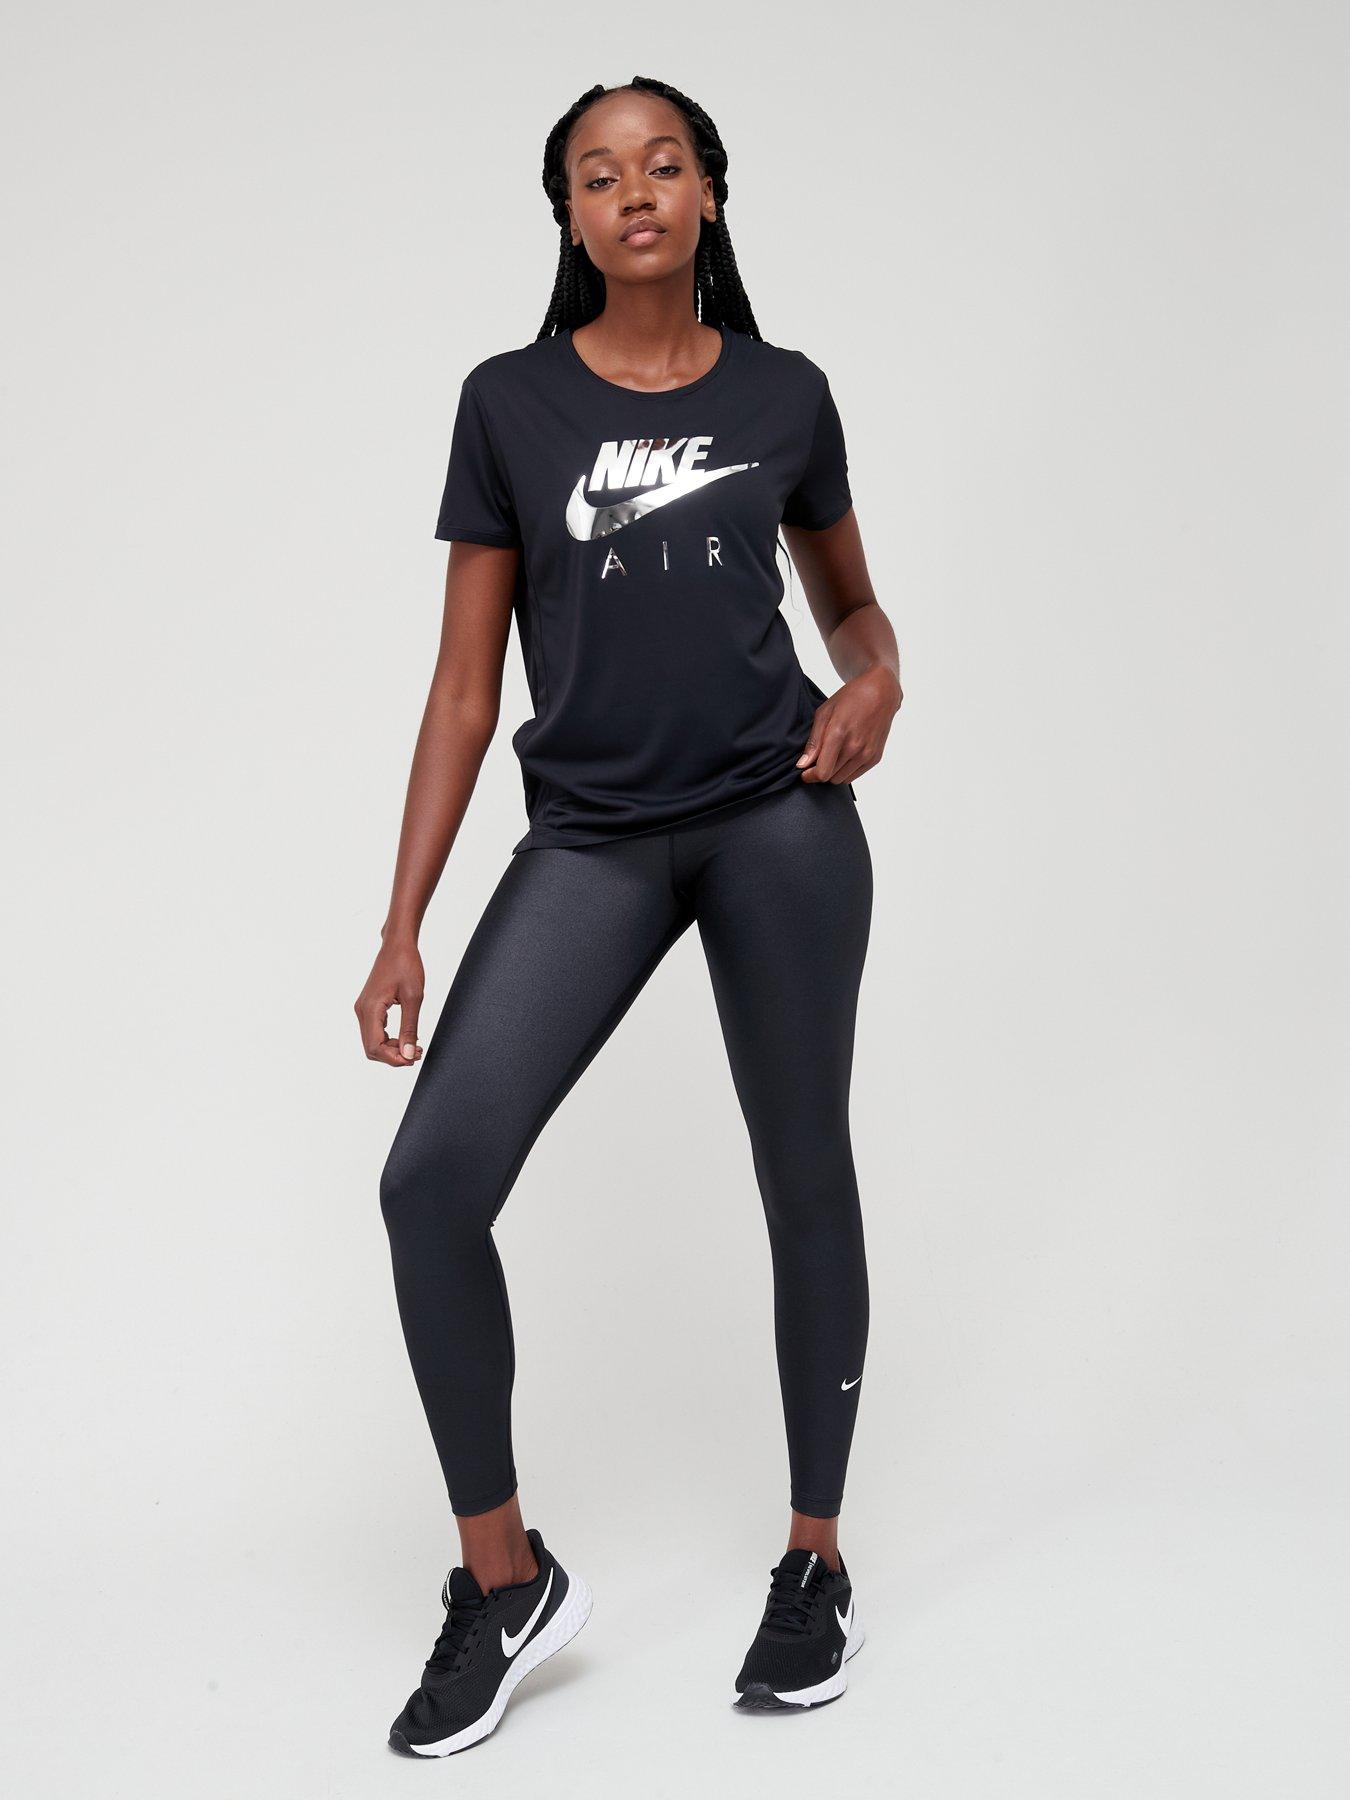 Nike Women's Dri-Fit One Mid-Rise Shine Legging Pants (Black/White, Large)  